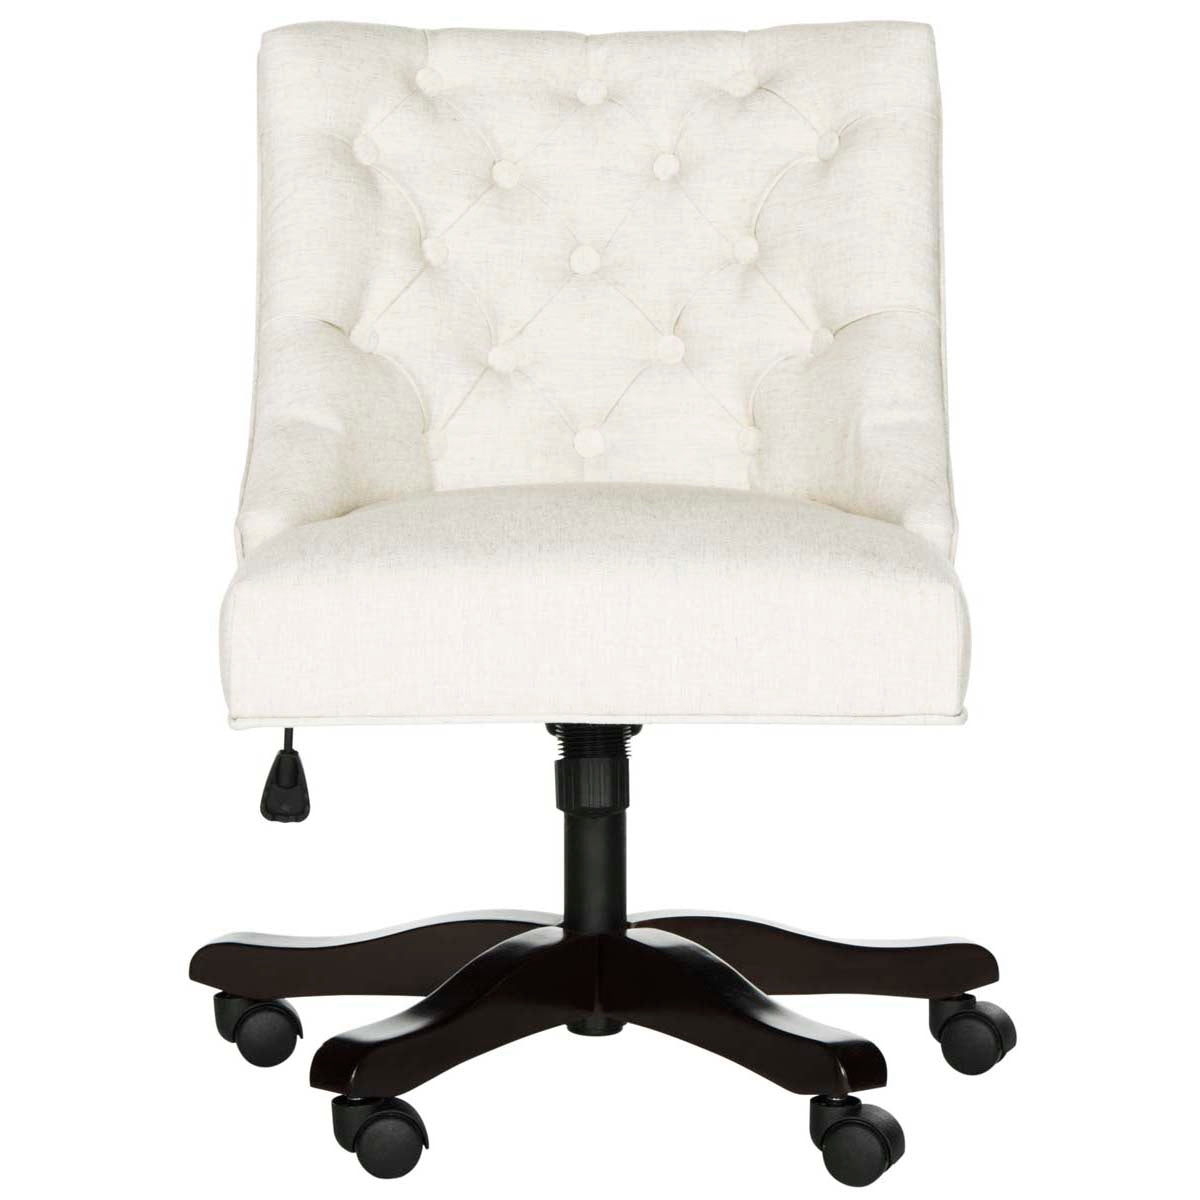 Safavieh Soho Tufted Linen Swivel Desk Chair , MCR1030